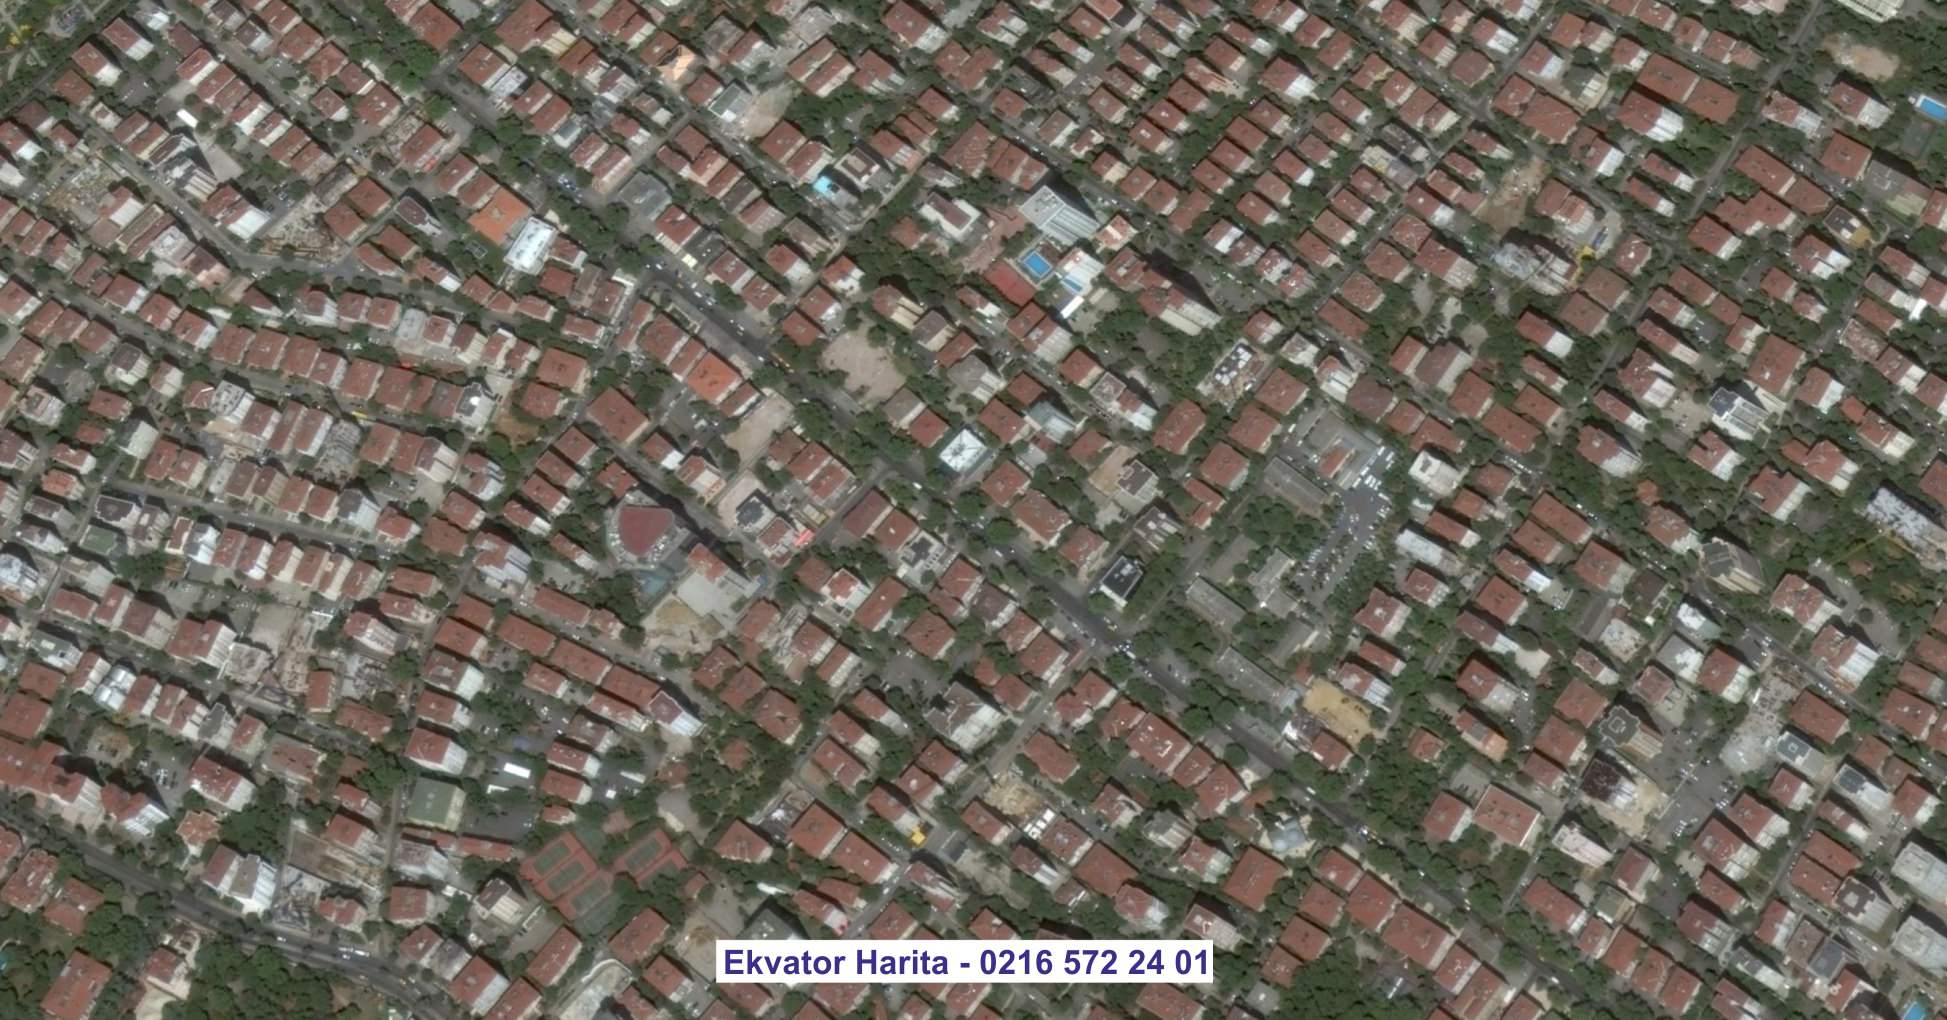 Çatalca Uydu Görüntüsü Örnek Fotoğrafı